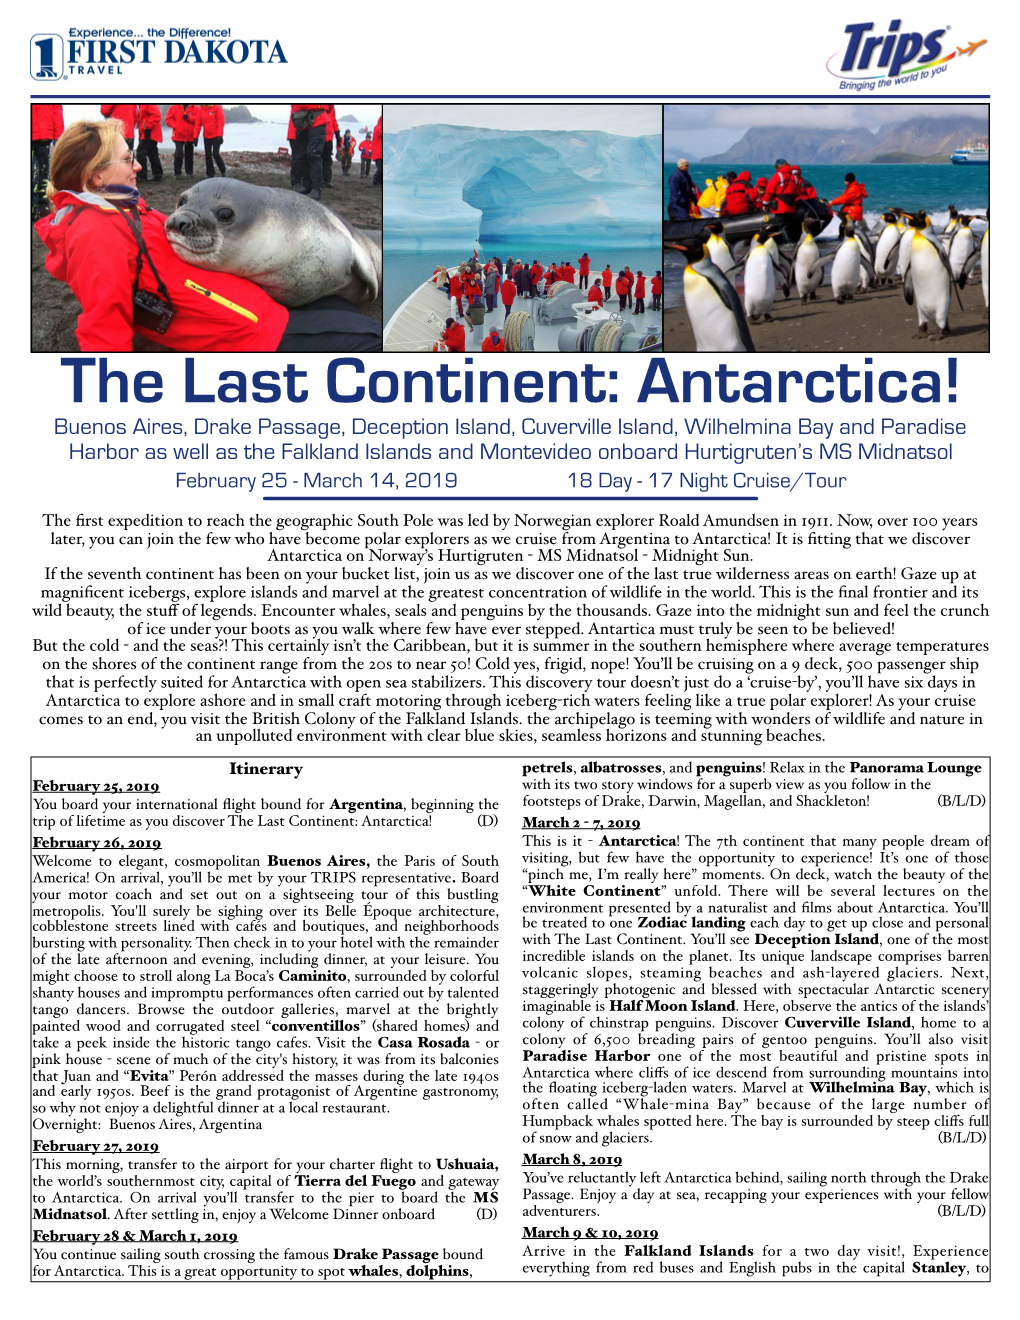 Jane Pugh Antarctica 2019 Date Change